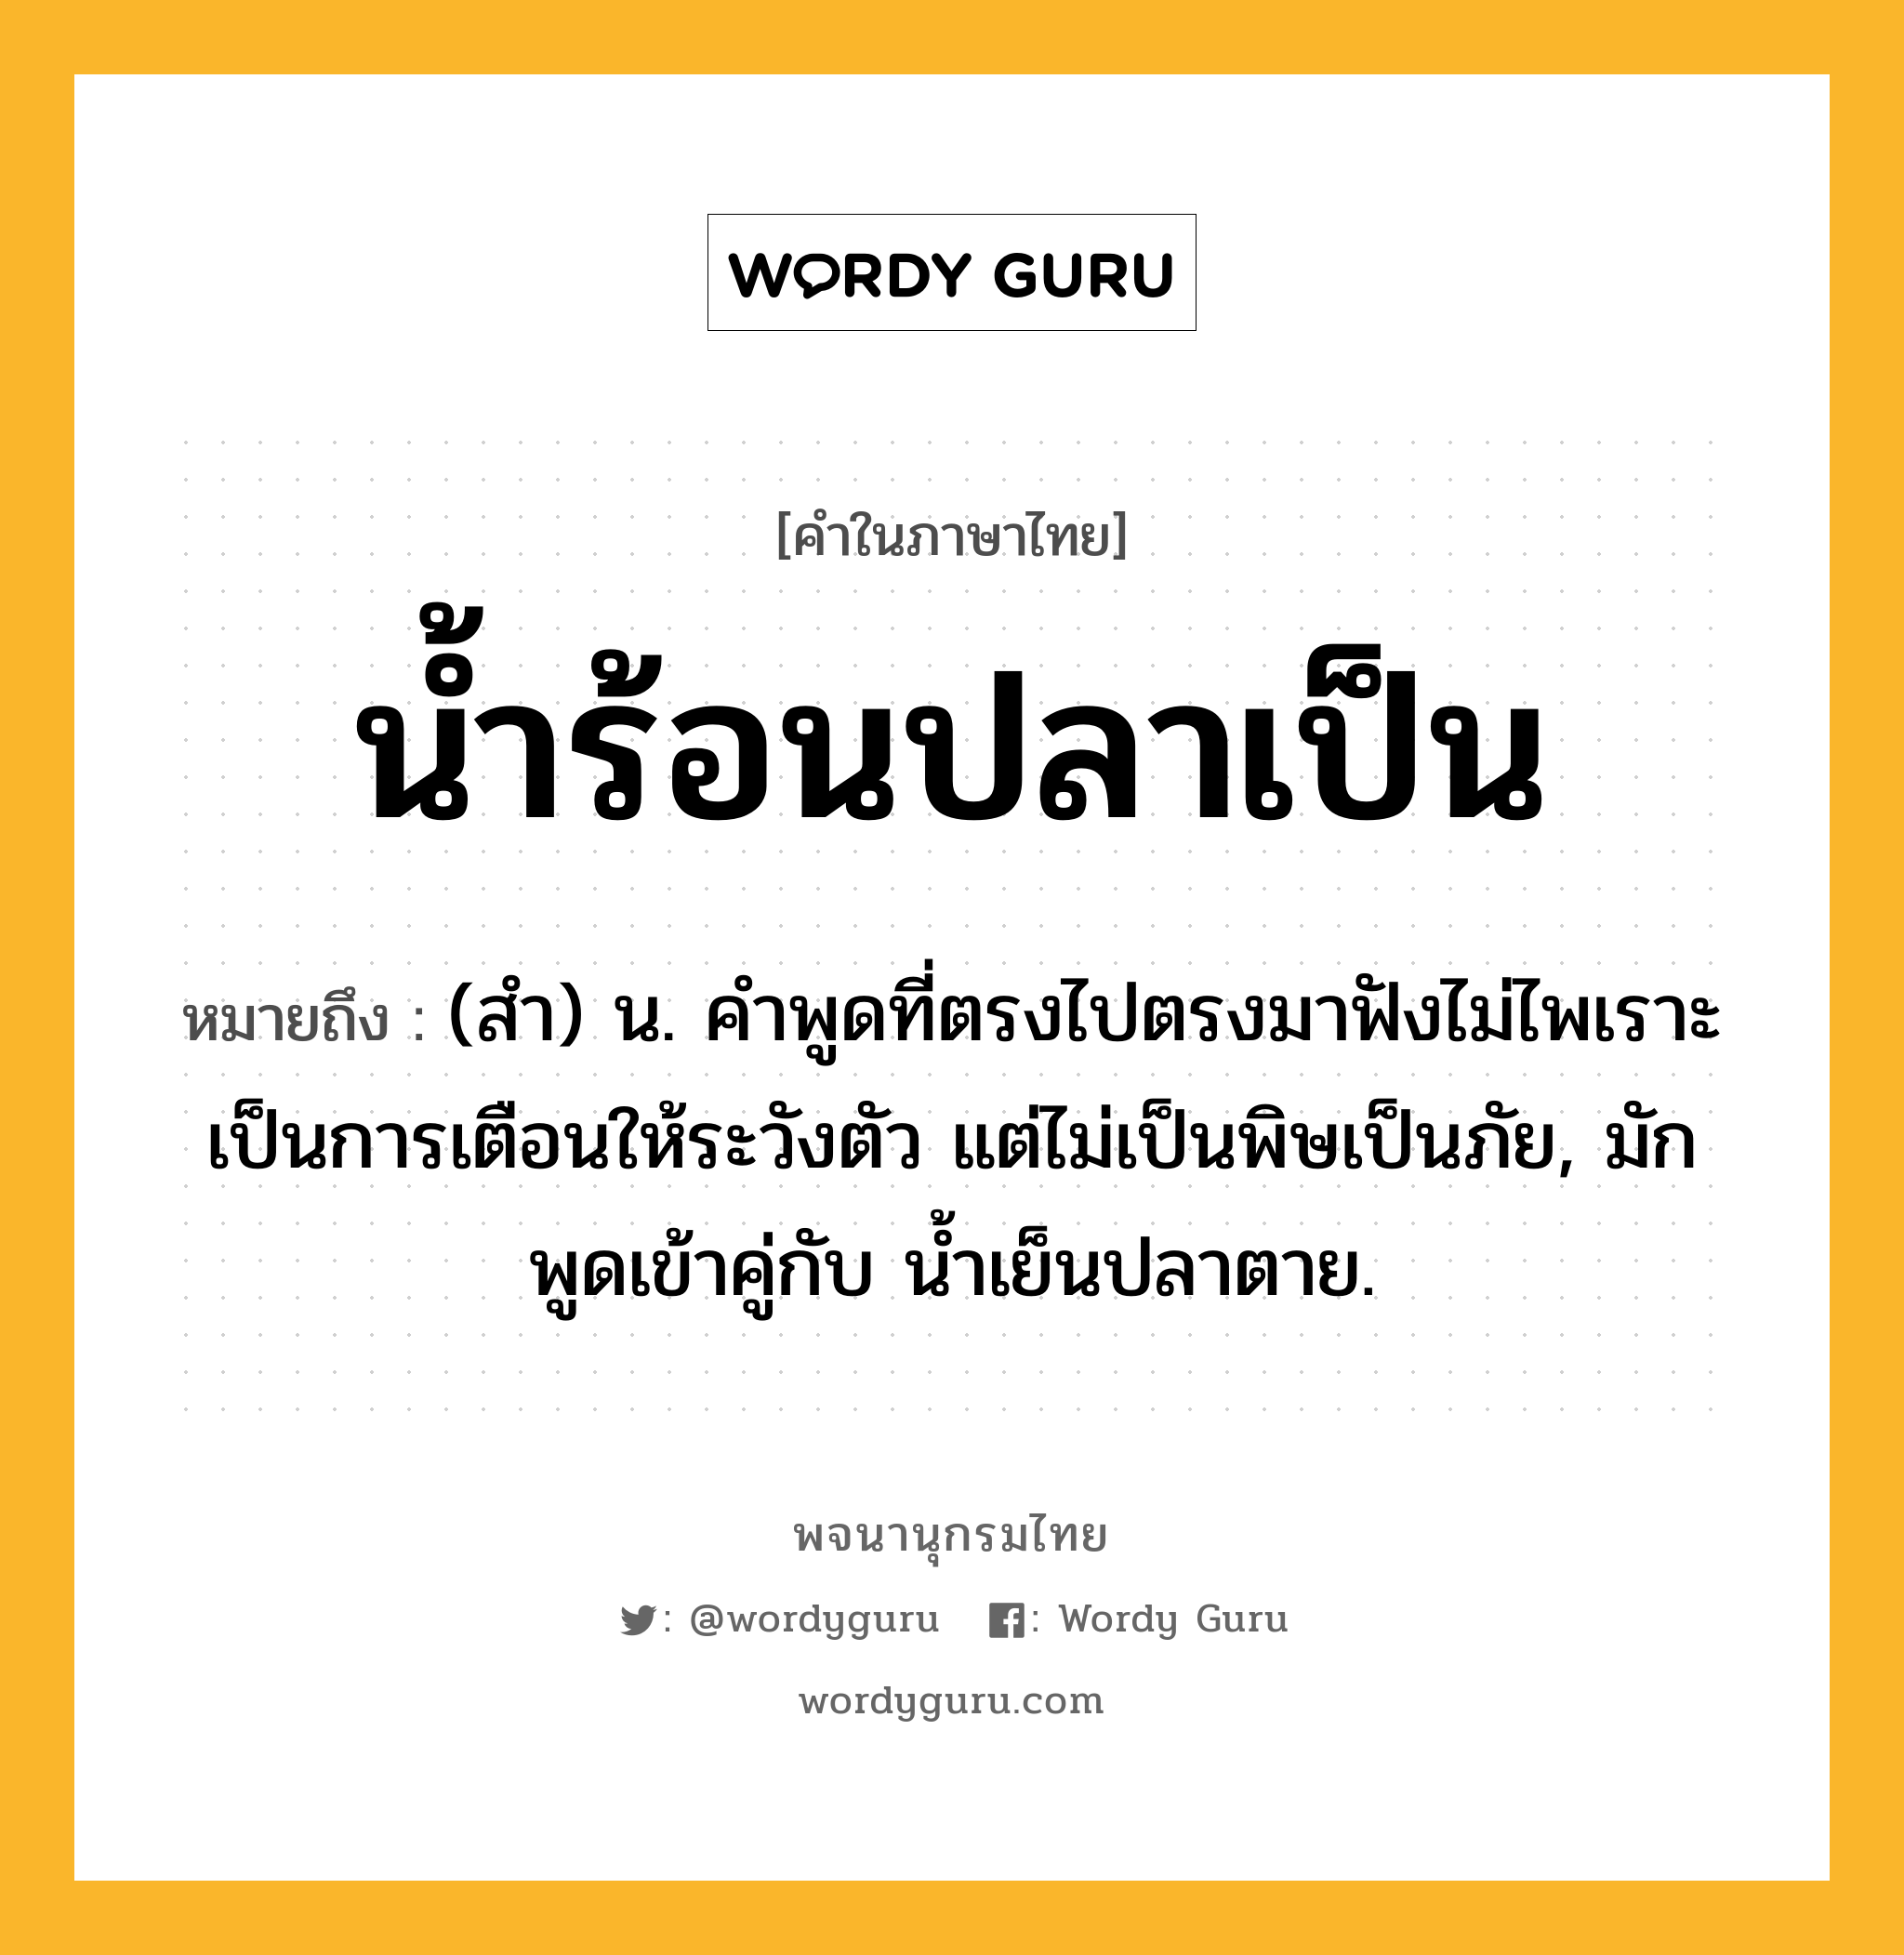 น้ำร้อนปลาเป็น หมายถึงอะไร?, คำในภาษาไทย น้ำร้อนปลาเป็น หมายถึง (สํา) น. คําพูดที่ตรงไปตรงมาฟังไม่ไพเราะ เป็นการเตือนให้ระวังตัว แต่ไม่เป็นพิษเป็นภัย, มักพูดเข้าคู่กับ นํ้าเย็นปลาตาย.